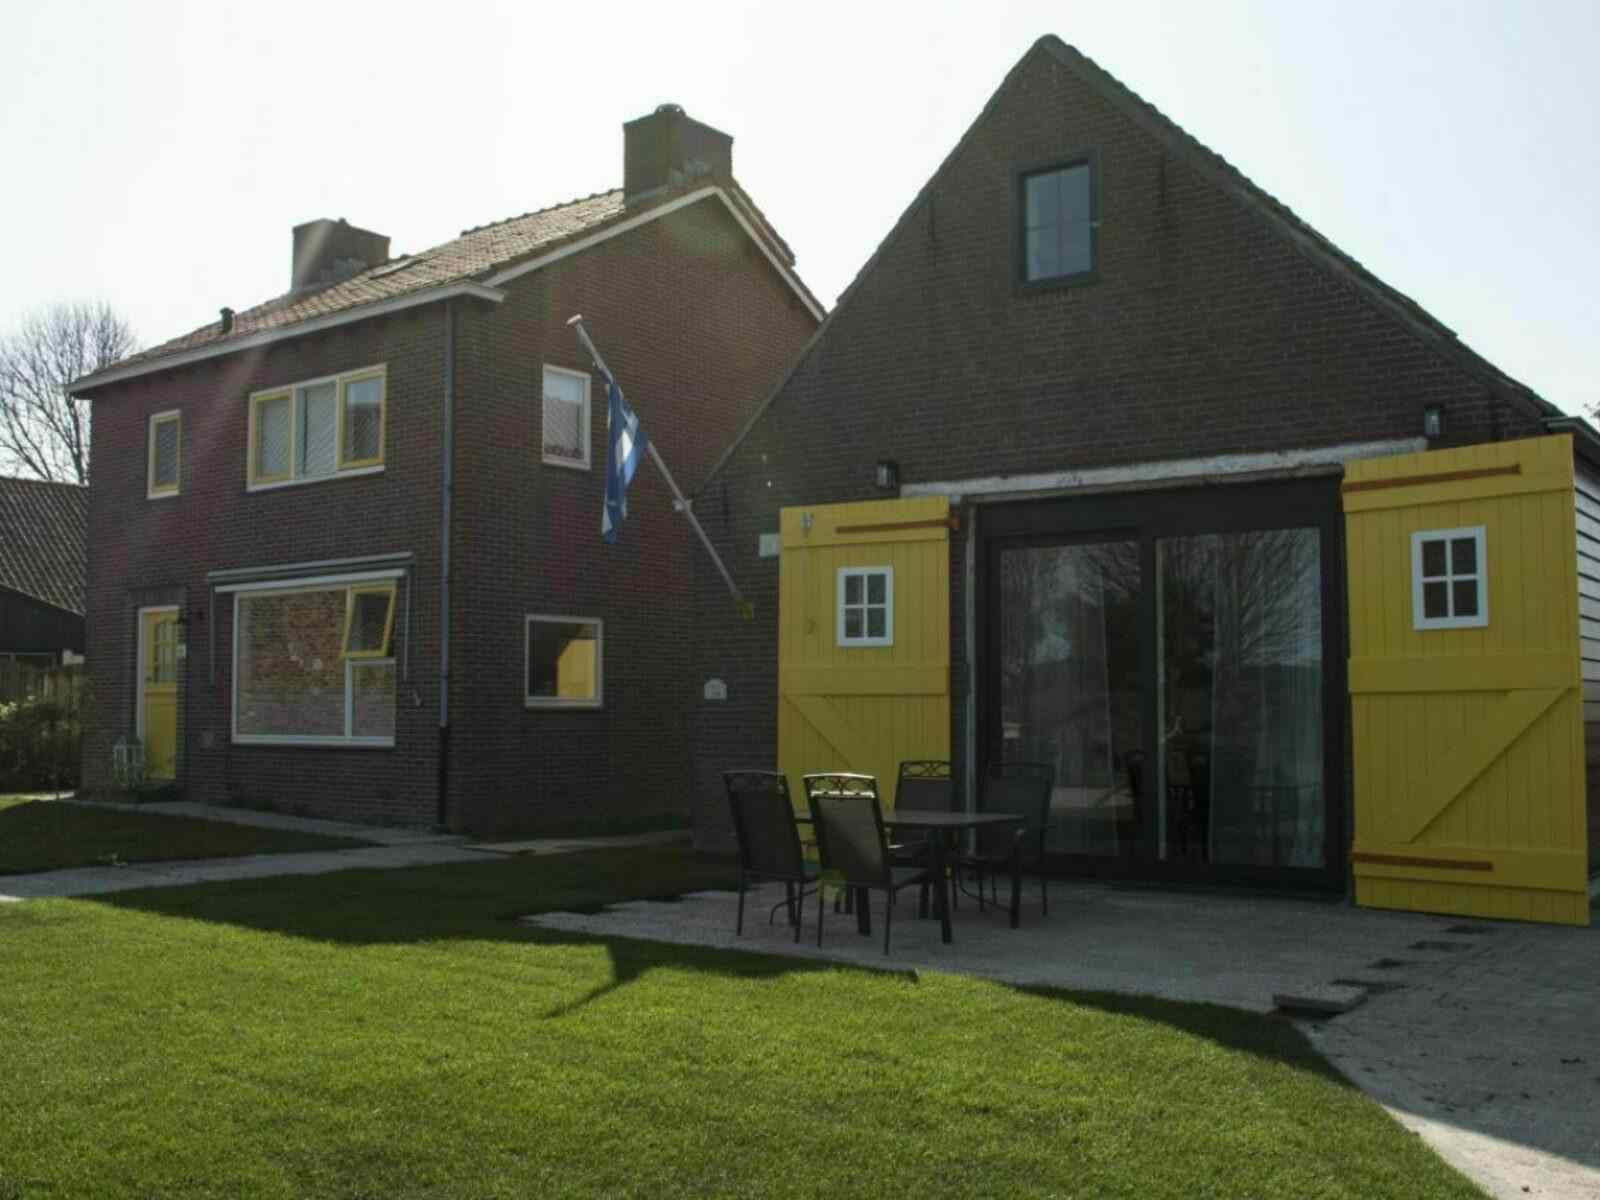 Prachtig 4 persoons particulier vakantiehuis in Biggekerke - Nederland - Europa - Biggekerke